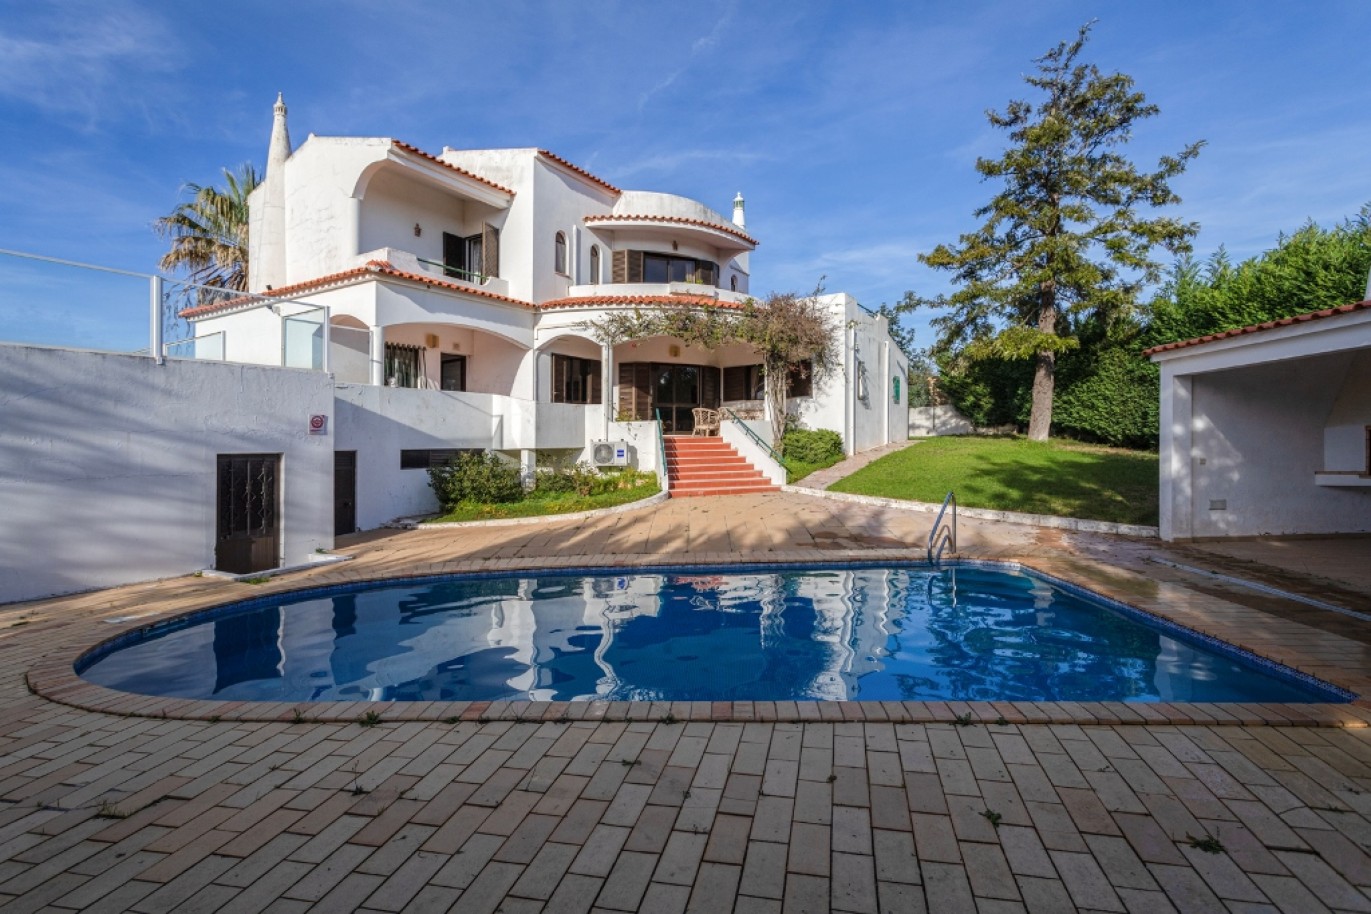 Moradia V4 com piscina em Albufeira, Algarve_252912